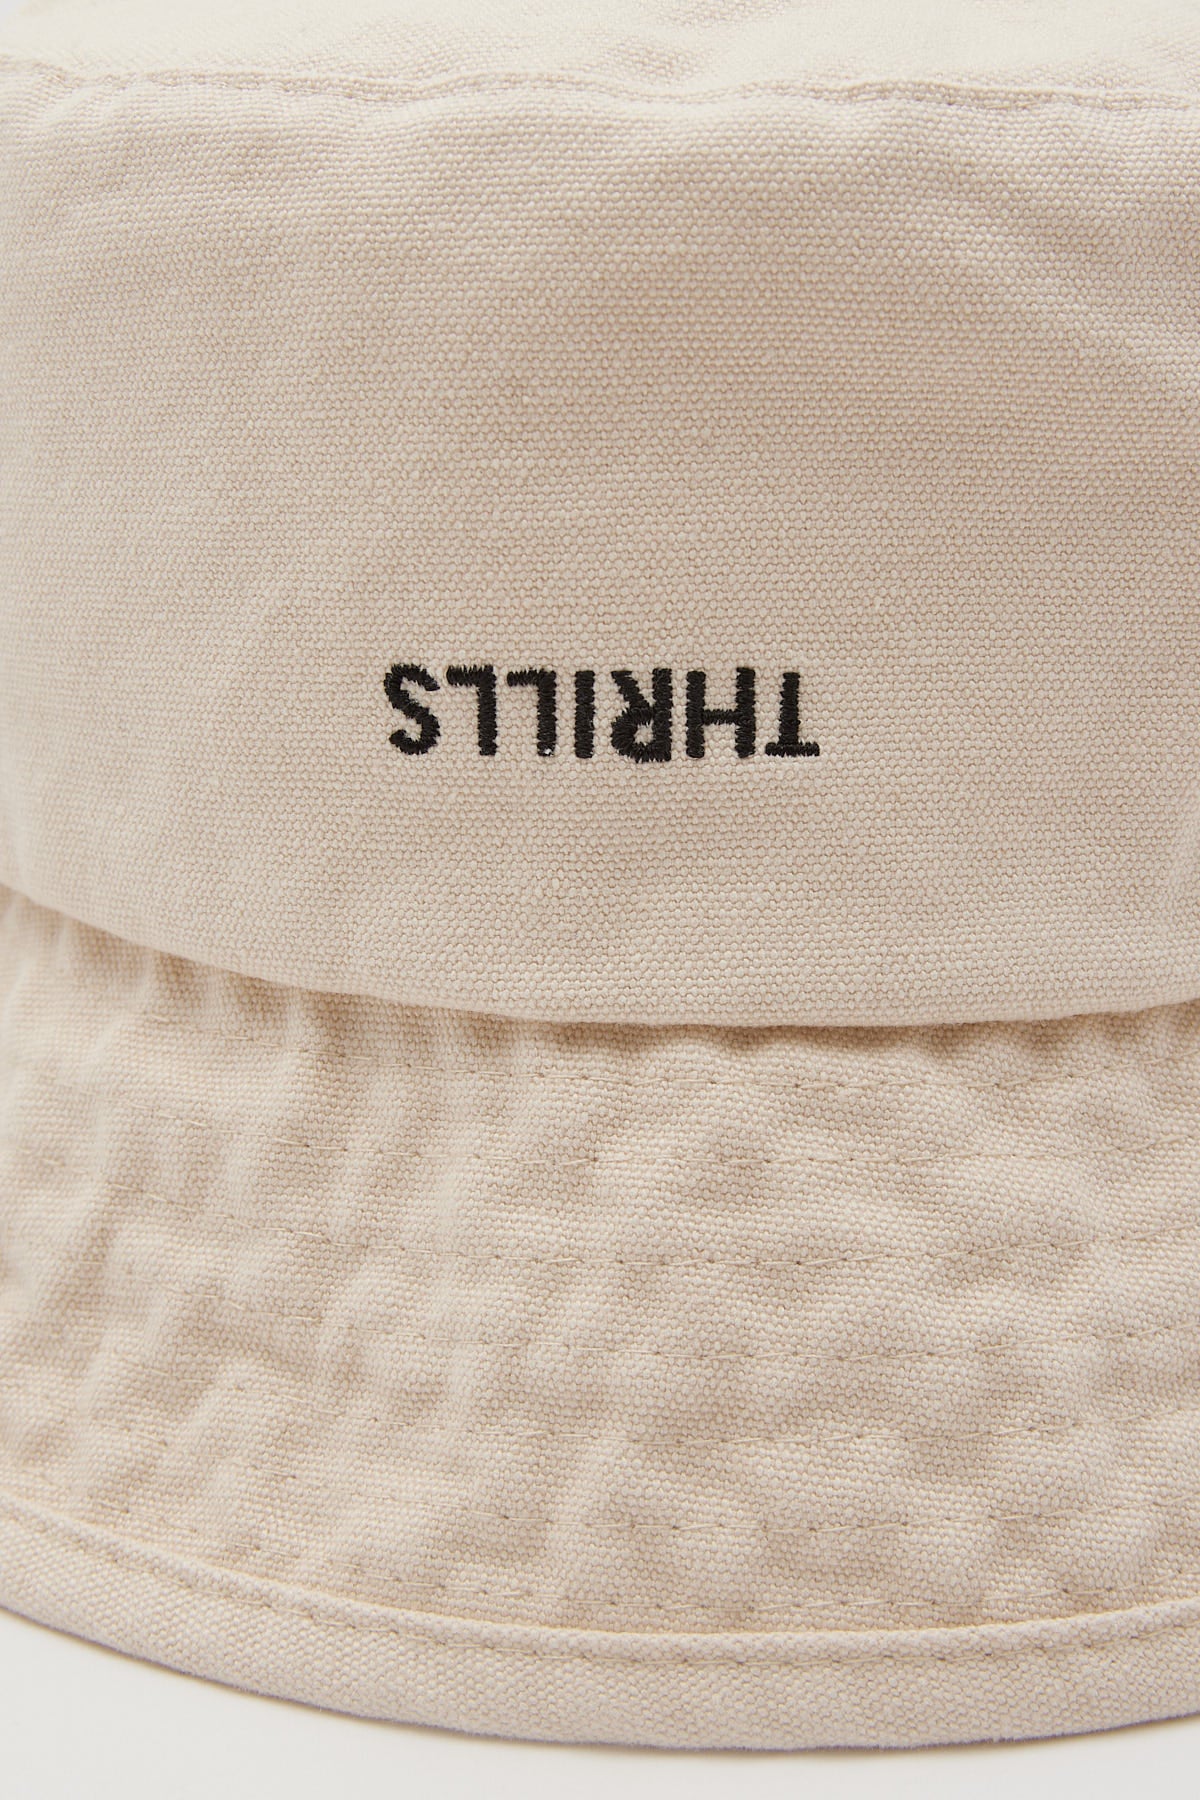 Thrills Minimal Thrills Bucket Hat Heritage White